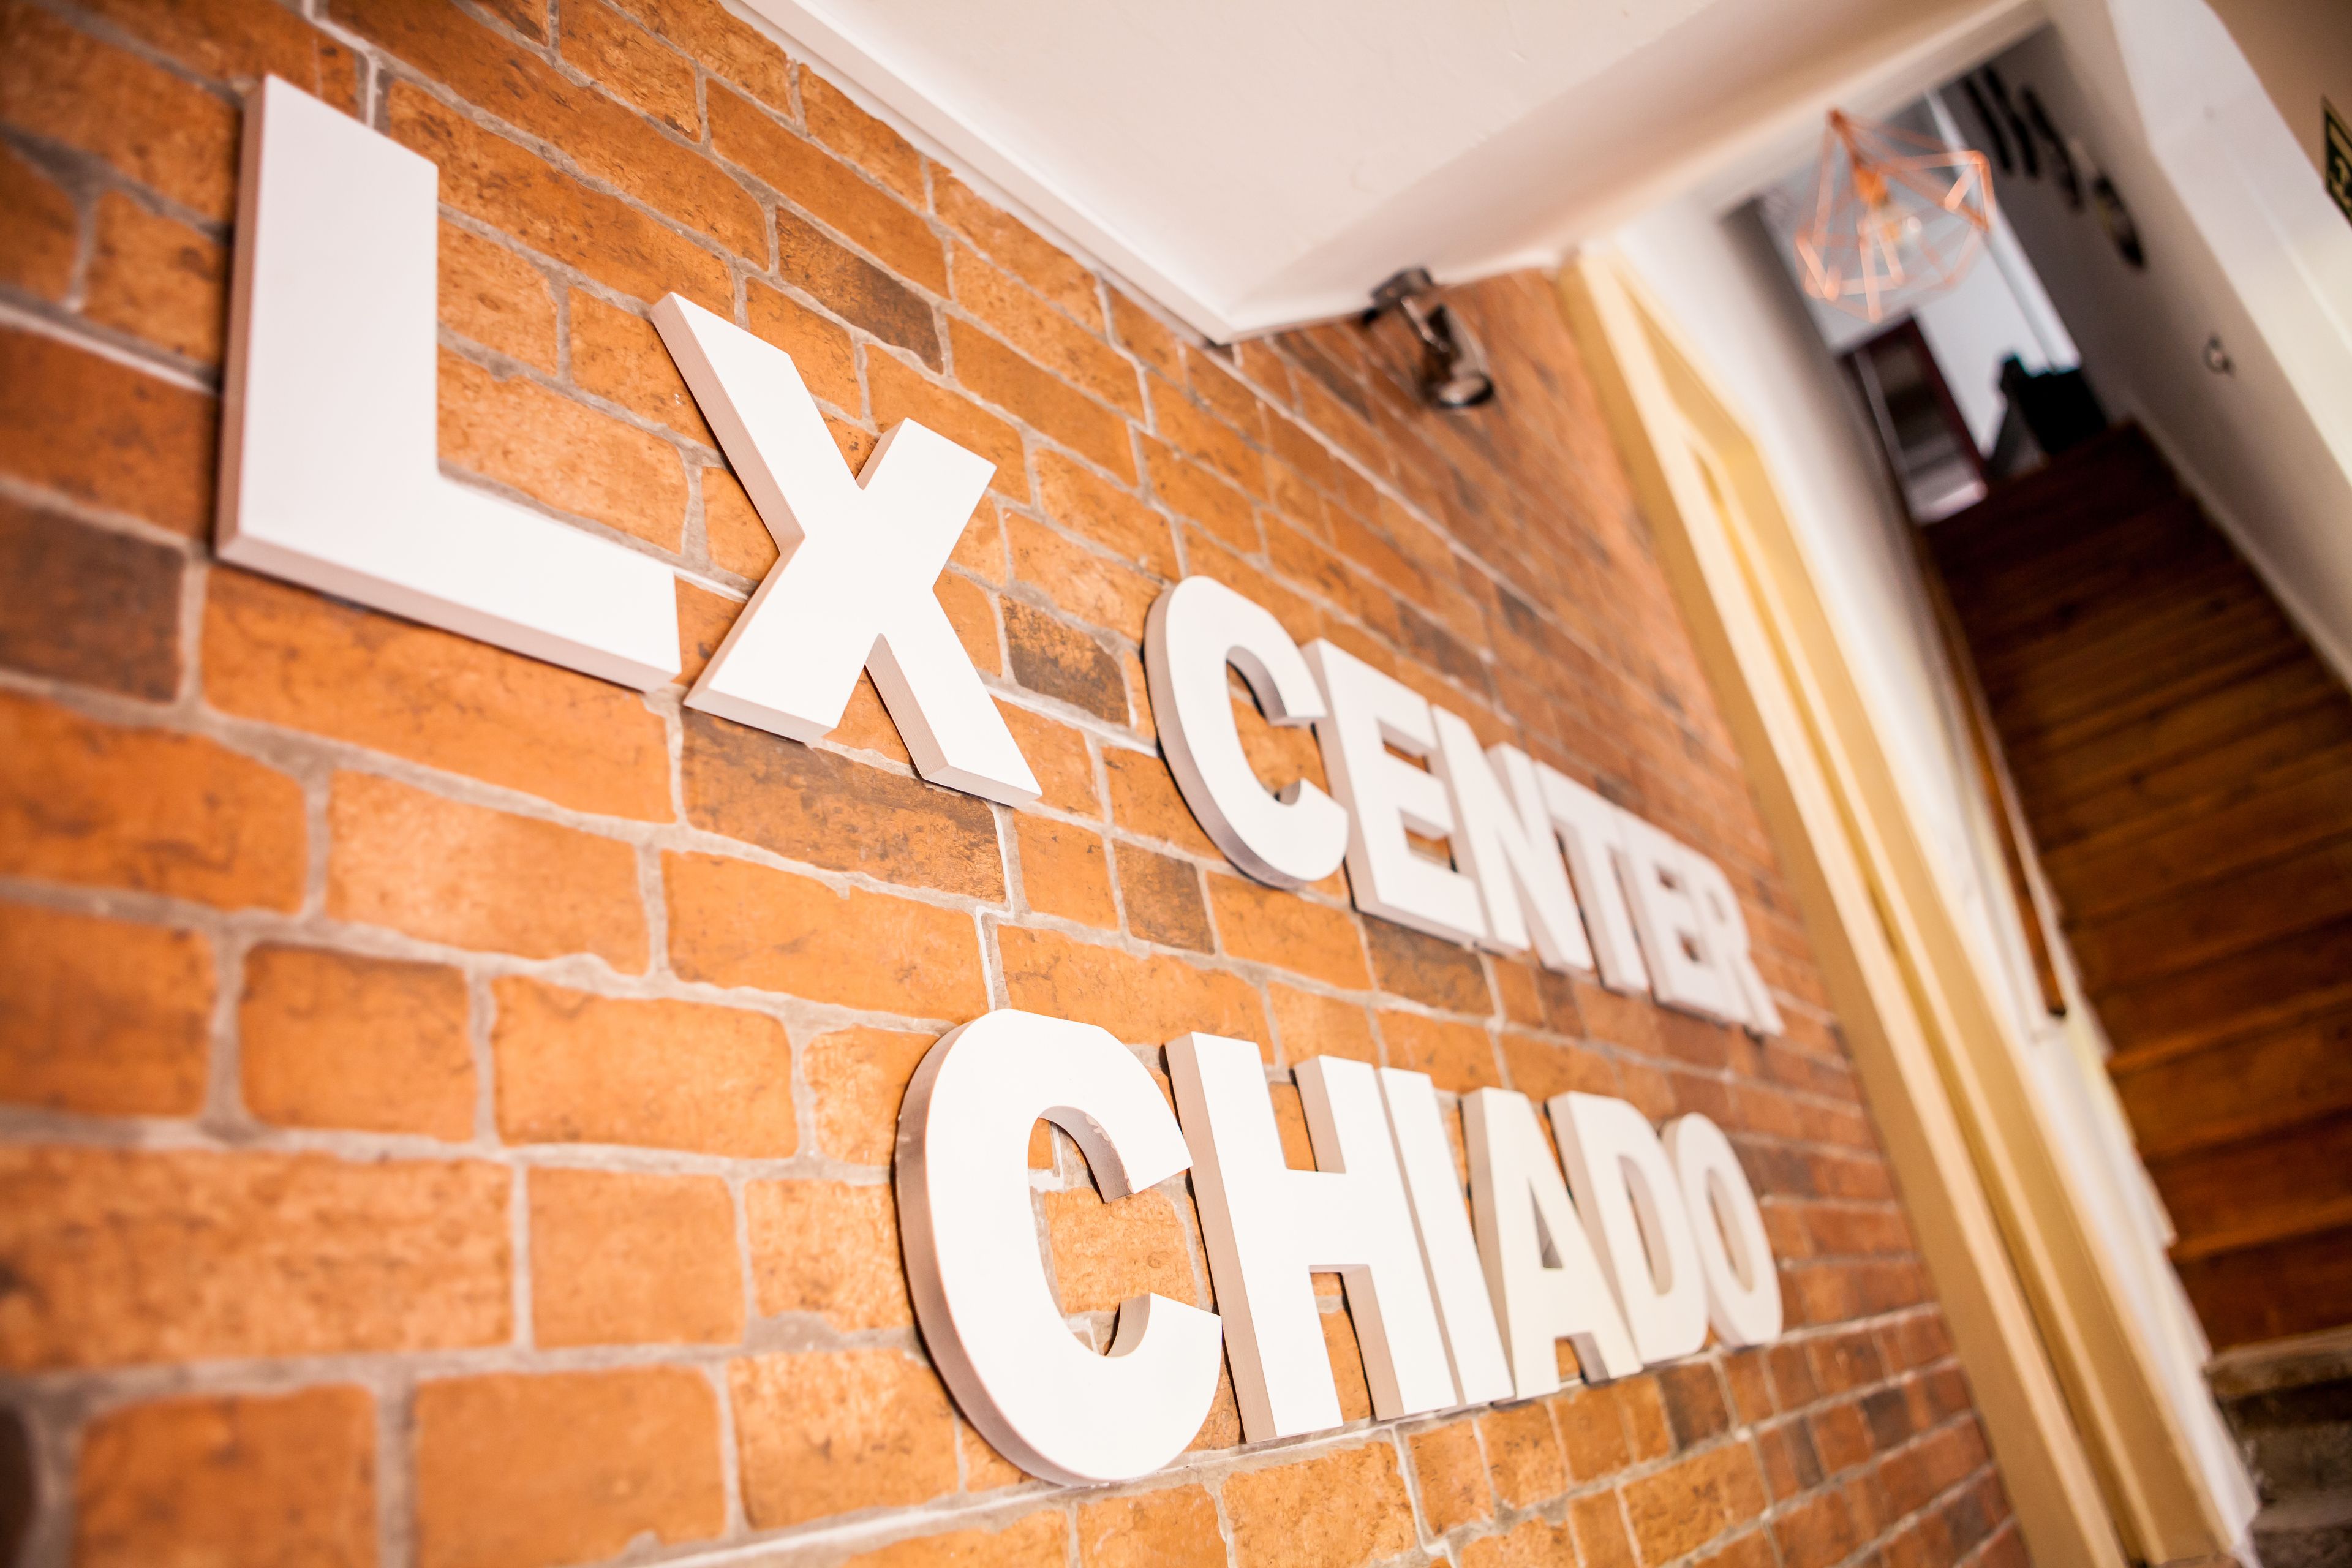 Lx Center Chiado image 1